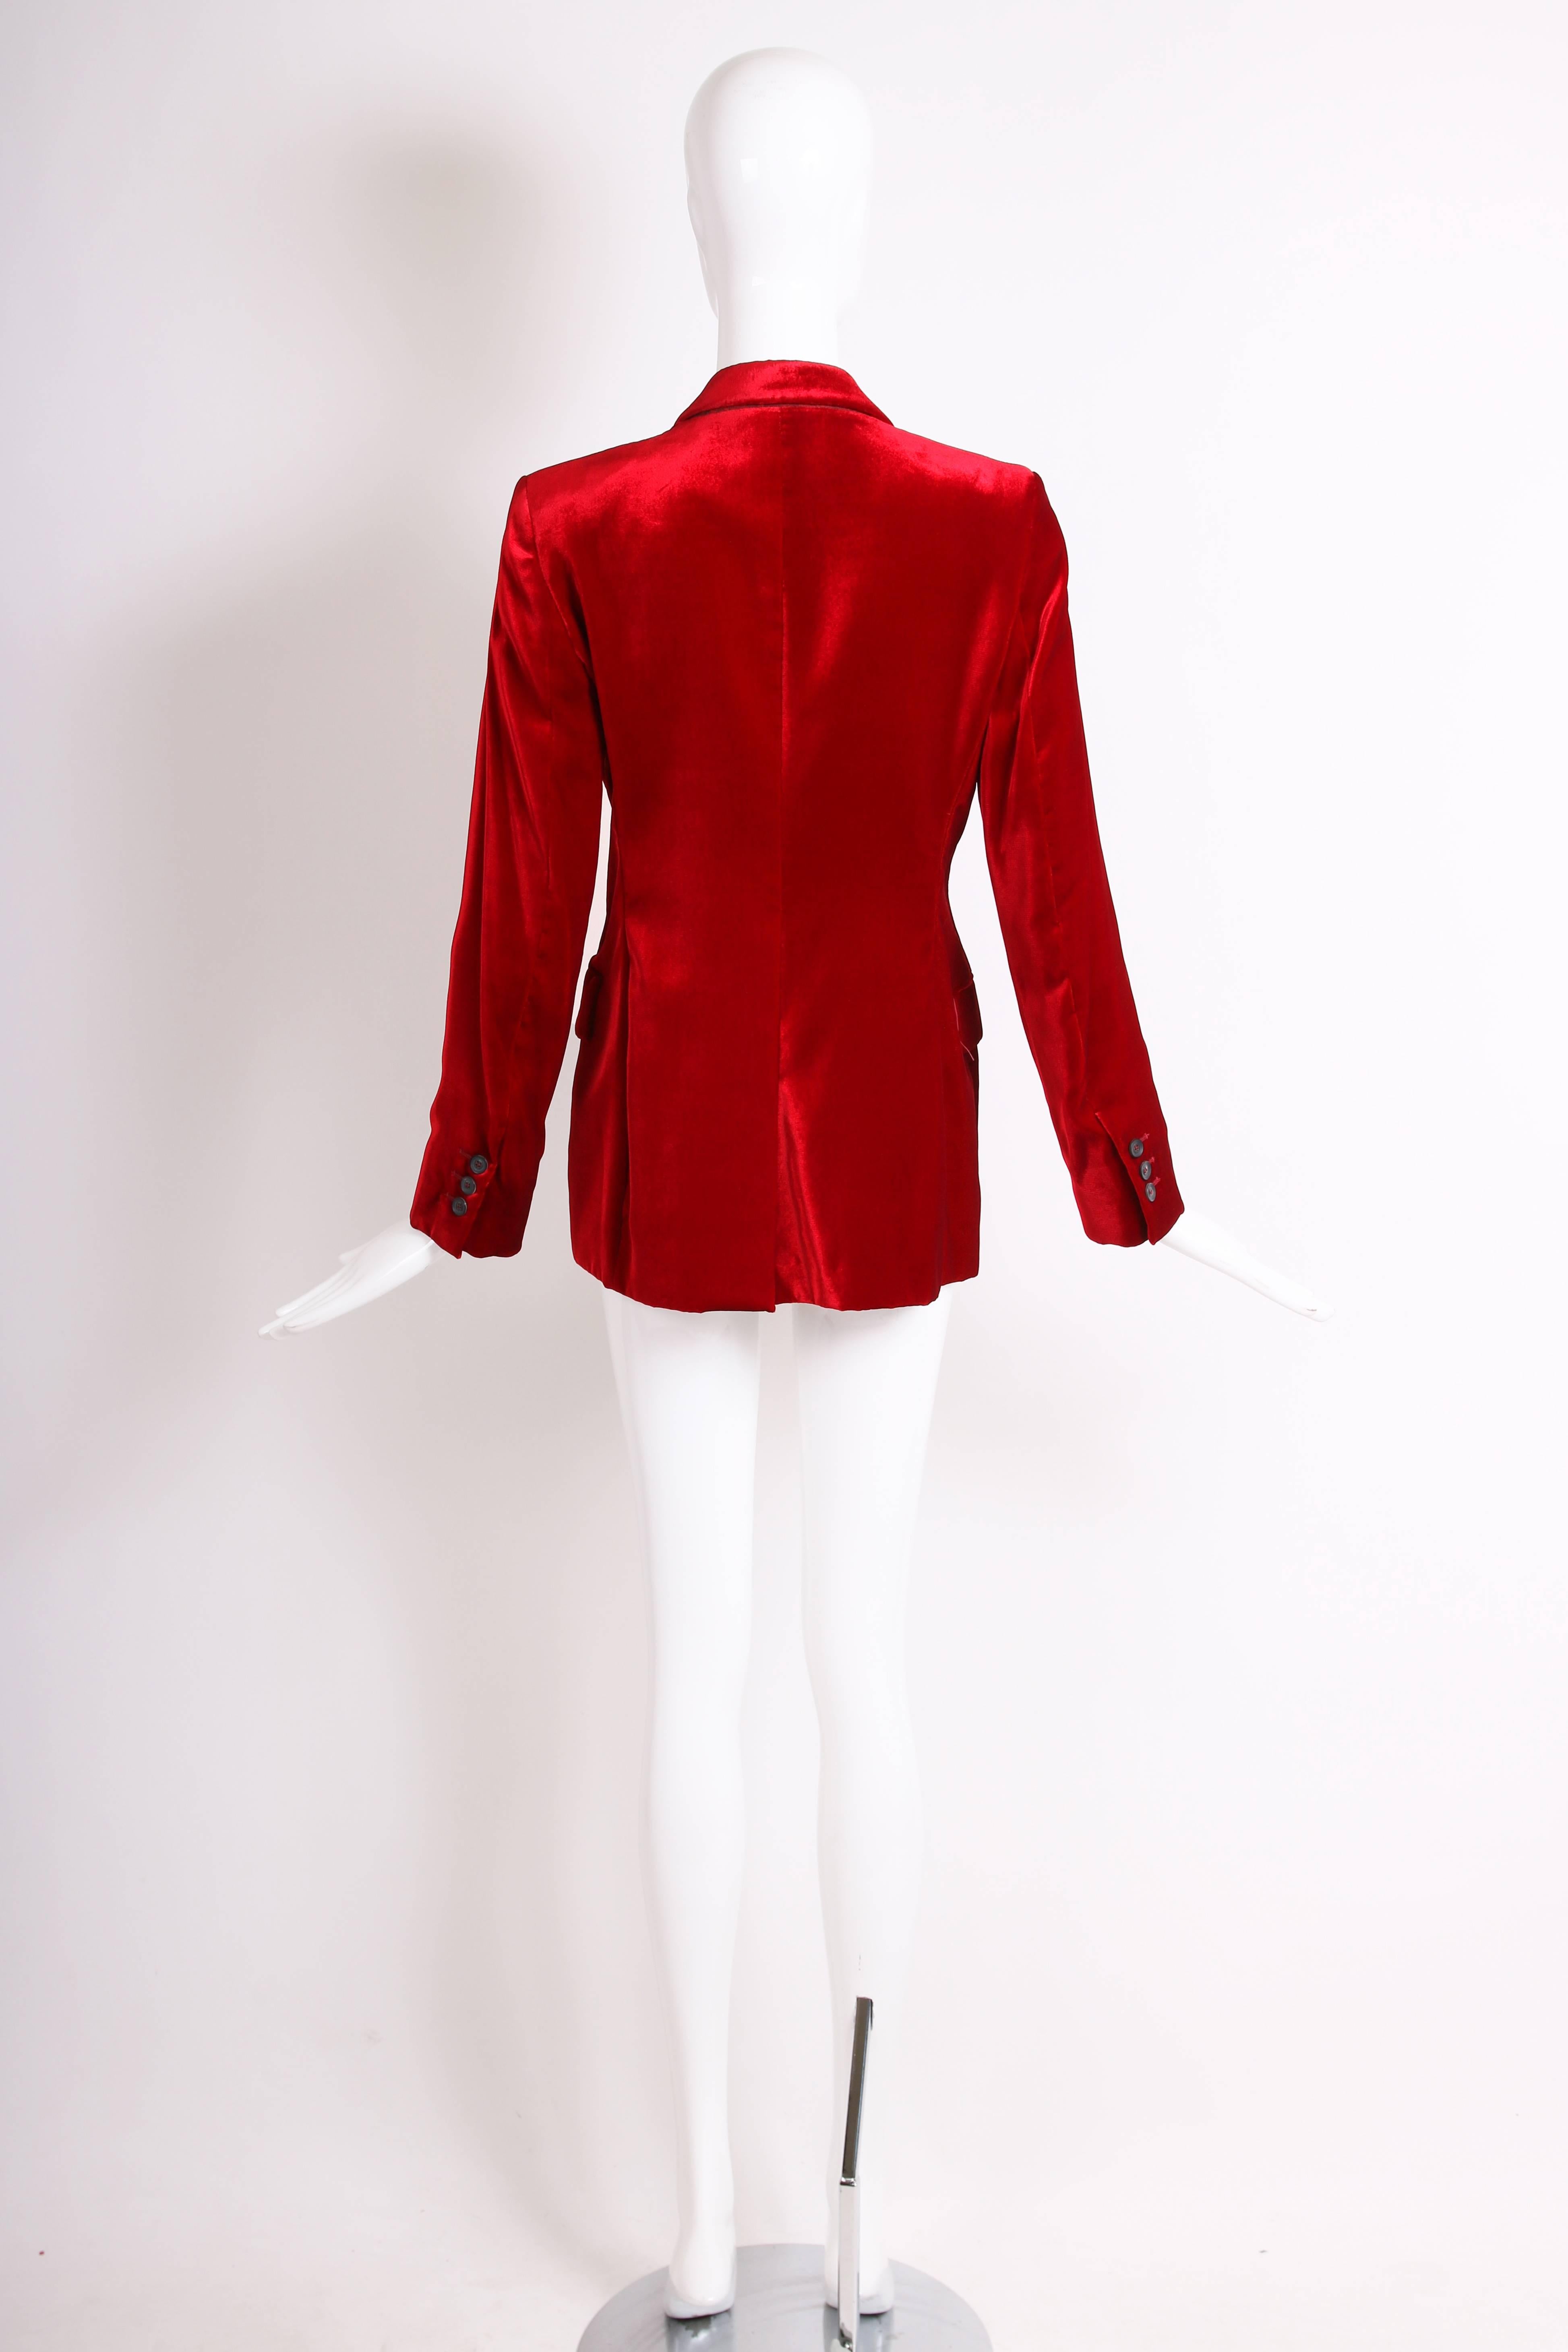 1999 Gucci by Tom Ford Red Velvet Slim Jacket Blazer 1